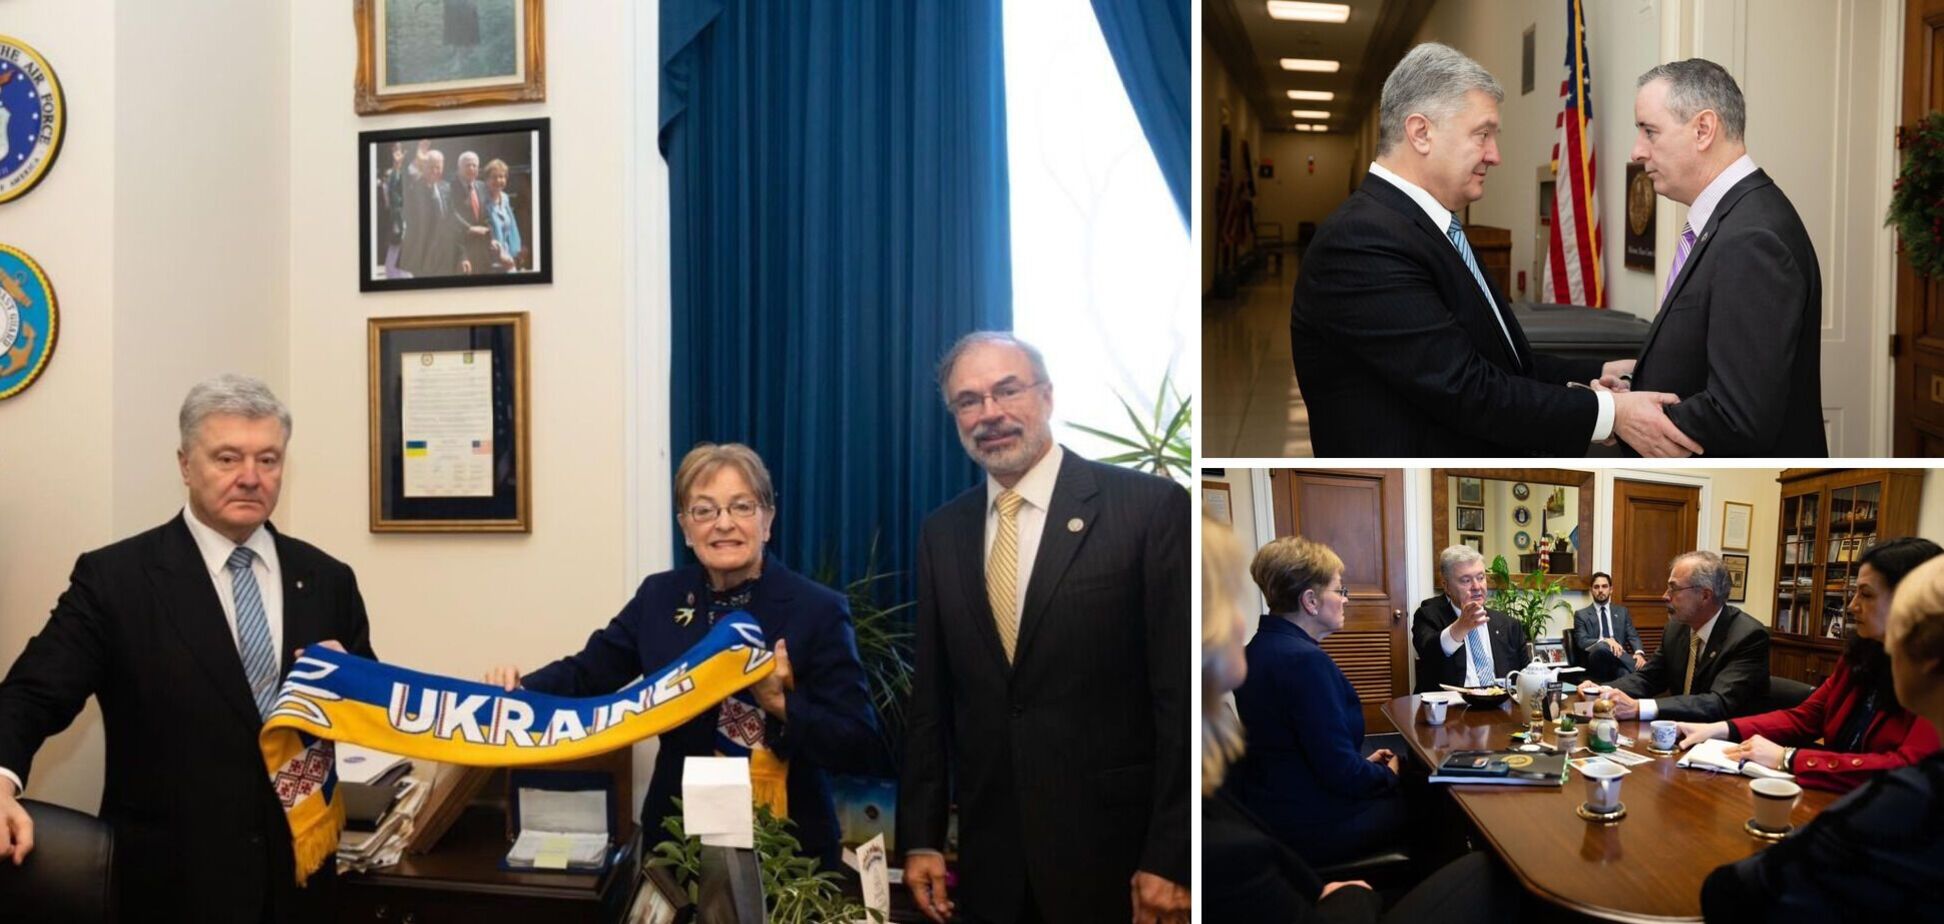 Порошенко встретился с руководством Украинского кокуса в Конгрессе США: обсудили поставки оружия и членство страны в НАТО